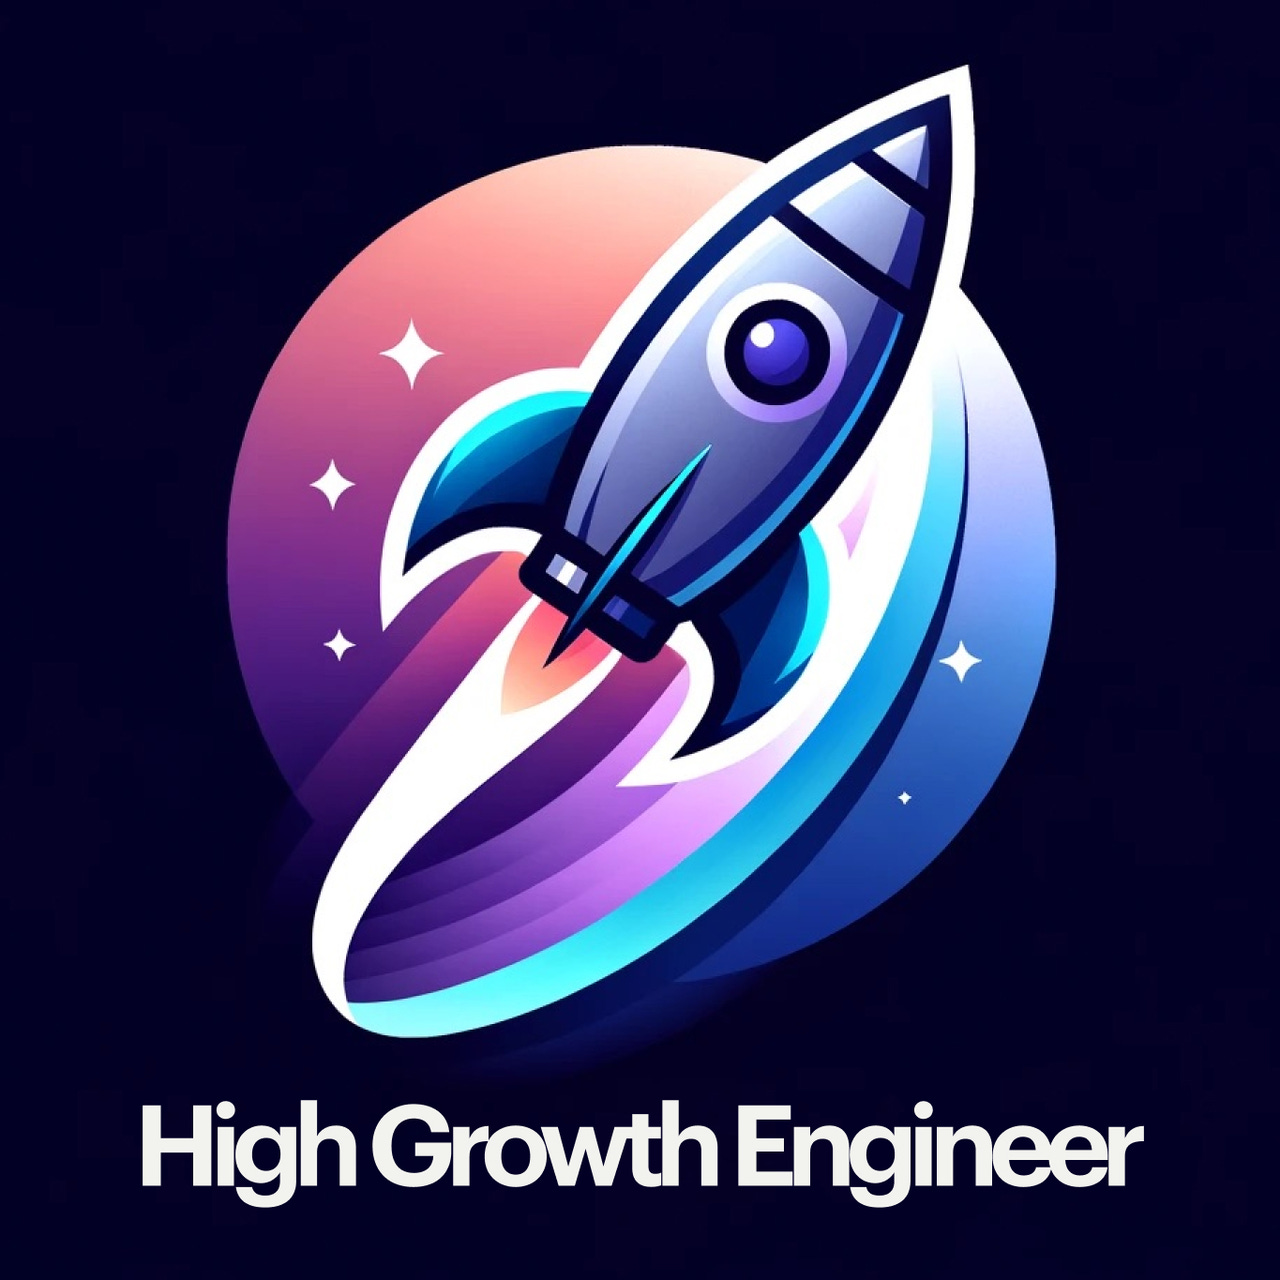 High Growth Engineer